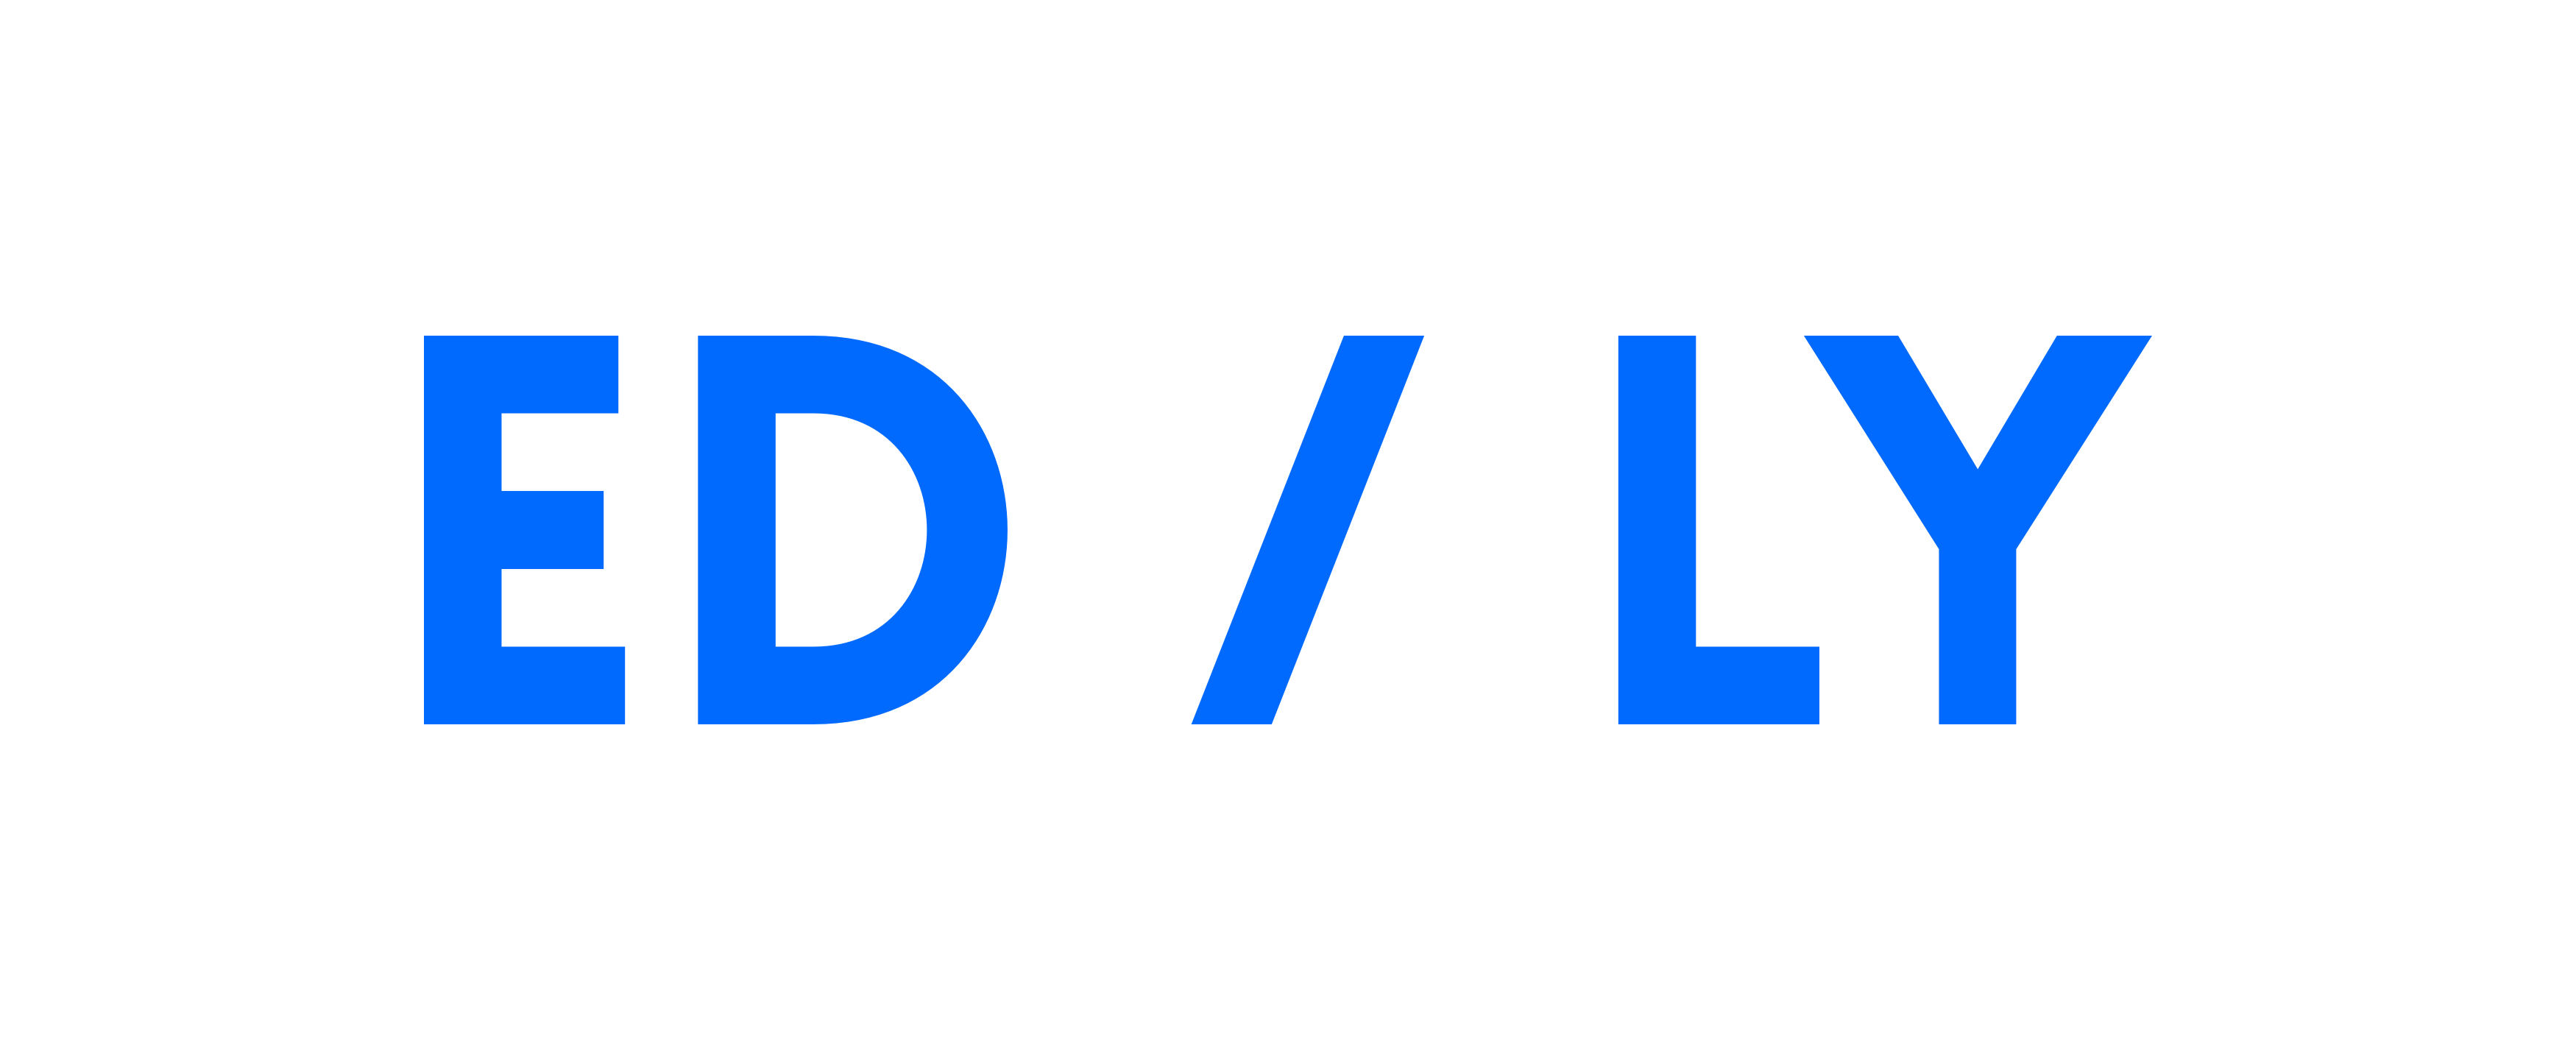 Educatively.com Logo